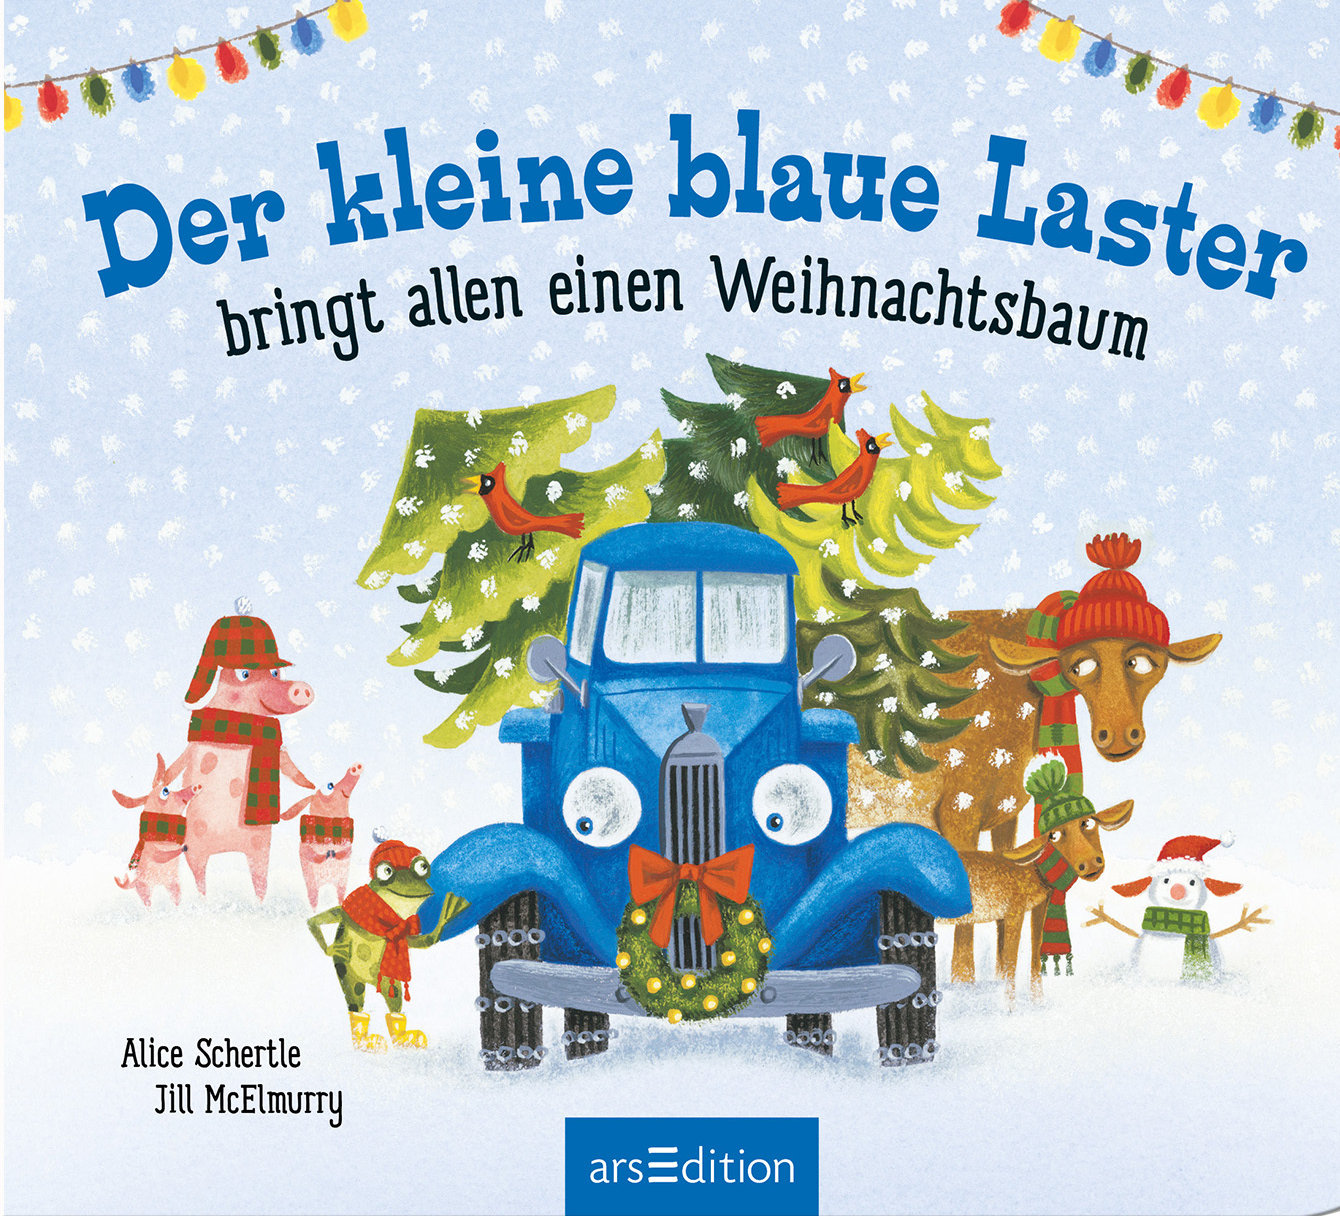 Buchcover "Der kleine blaue Laster bringt allen einen Weihnachtsbaum", arsEdition